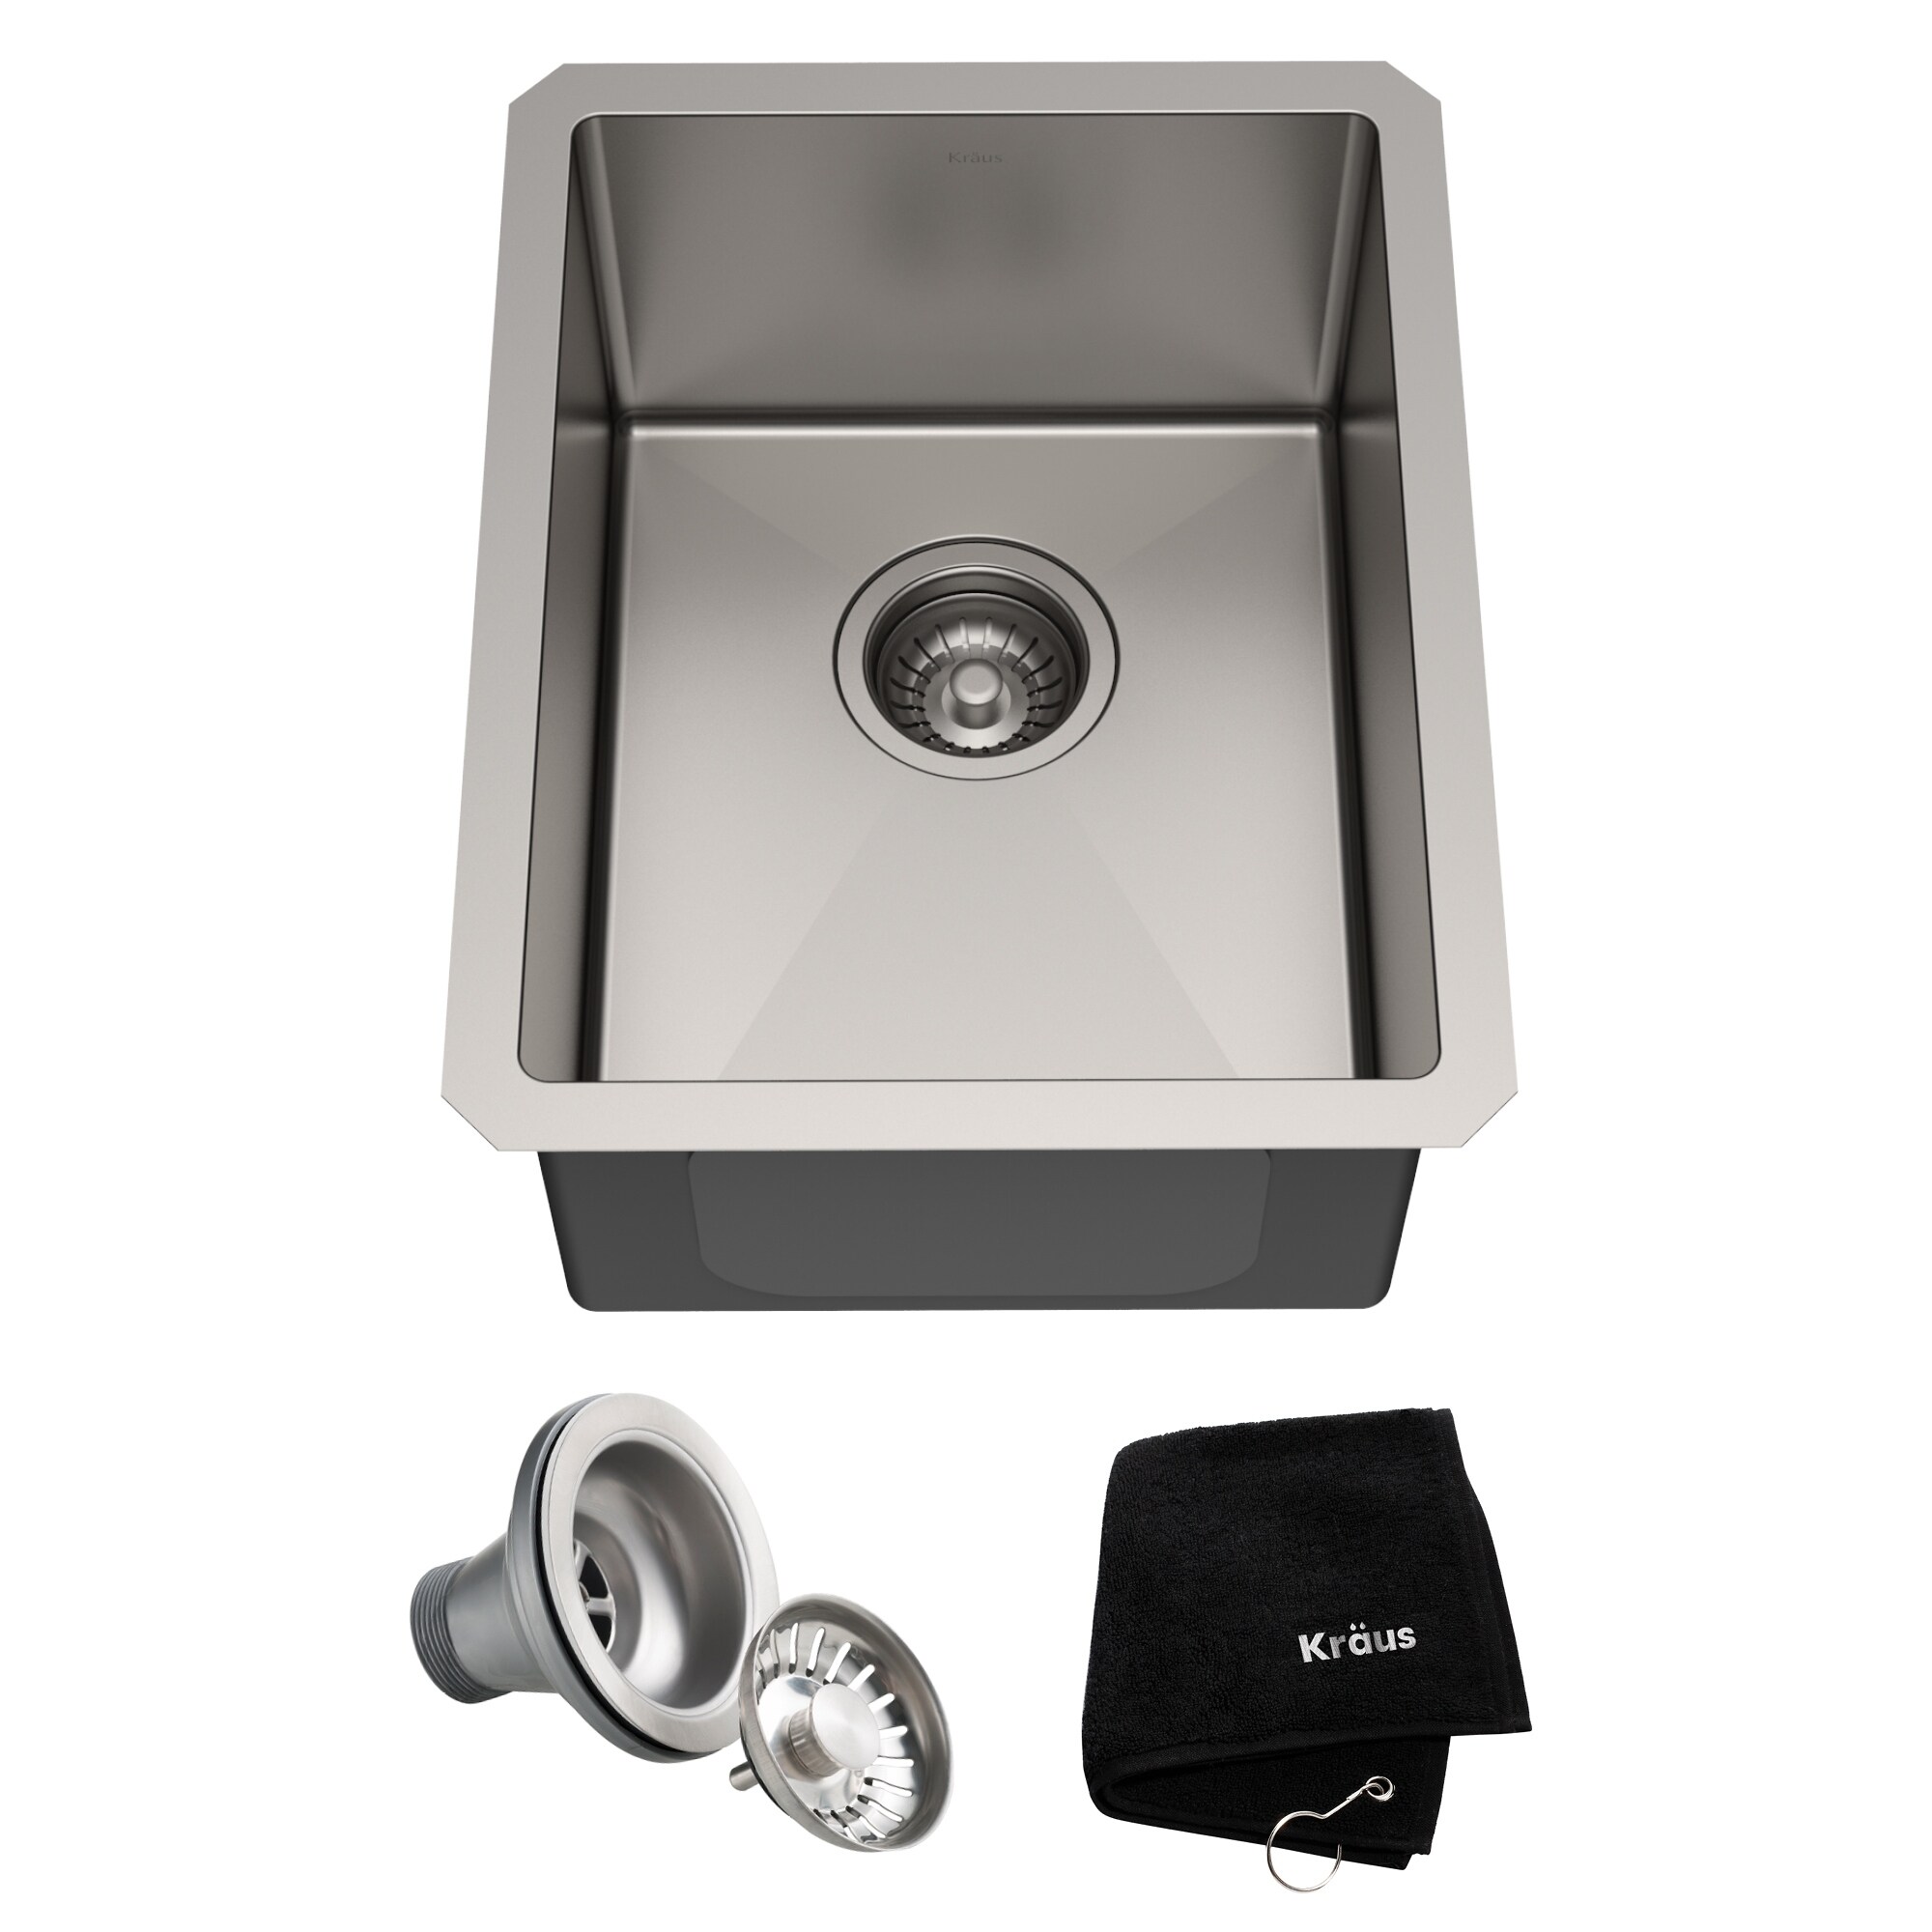 KRAUS Standart PRO Stainless Steel Undermount Kitchen Sink Bed Bath   Beyond 23561281